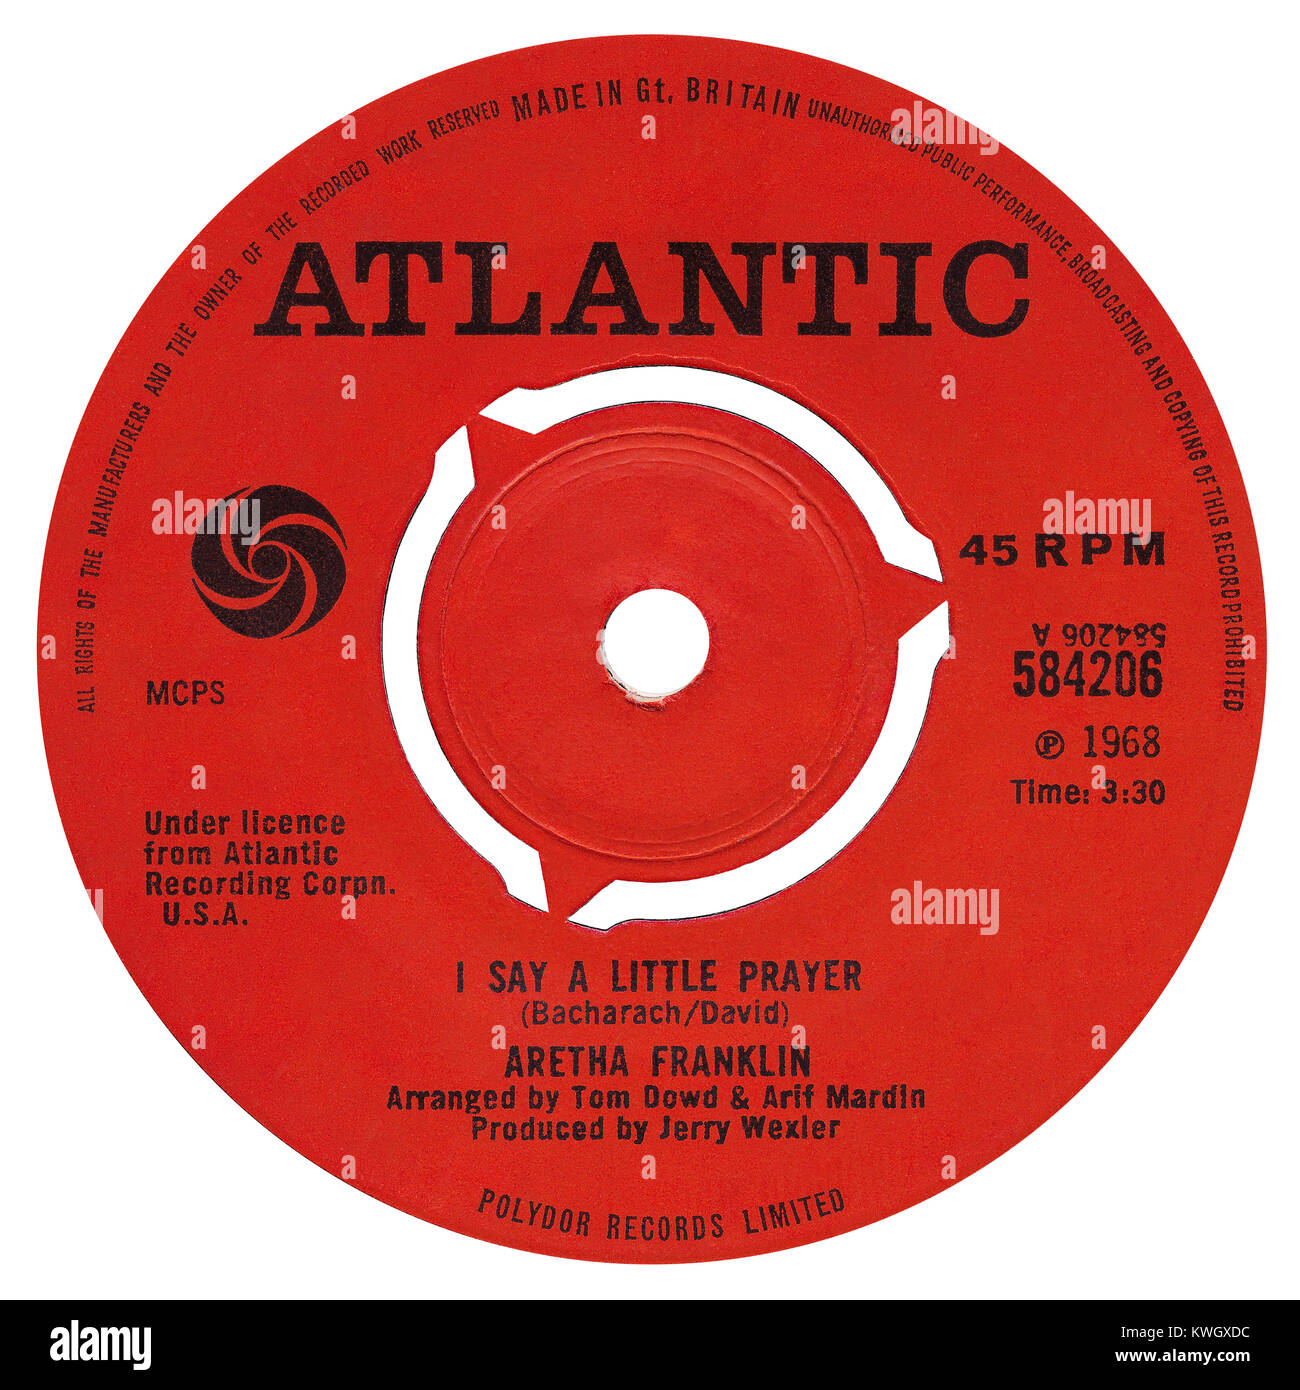 45 U/min 7" das britische Label von ich ein kleines Gebet sagen von Aretha Franklin. Von Burt Bacharach und Hal David, arrangiert von Tom Dowd und Arif Mardin und von Jerry Wexler produziert geschrieben. Auf dem Atlantik Label im August 1968 freigegeben. Stockfoto